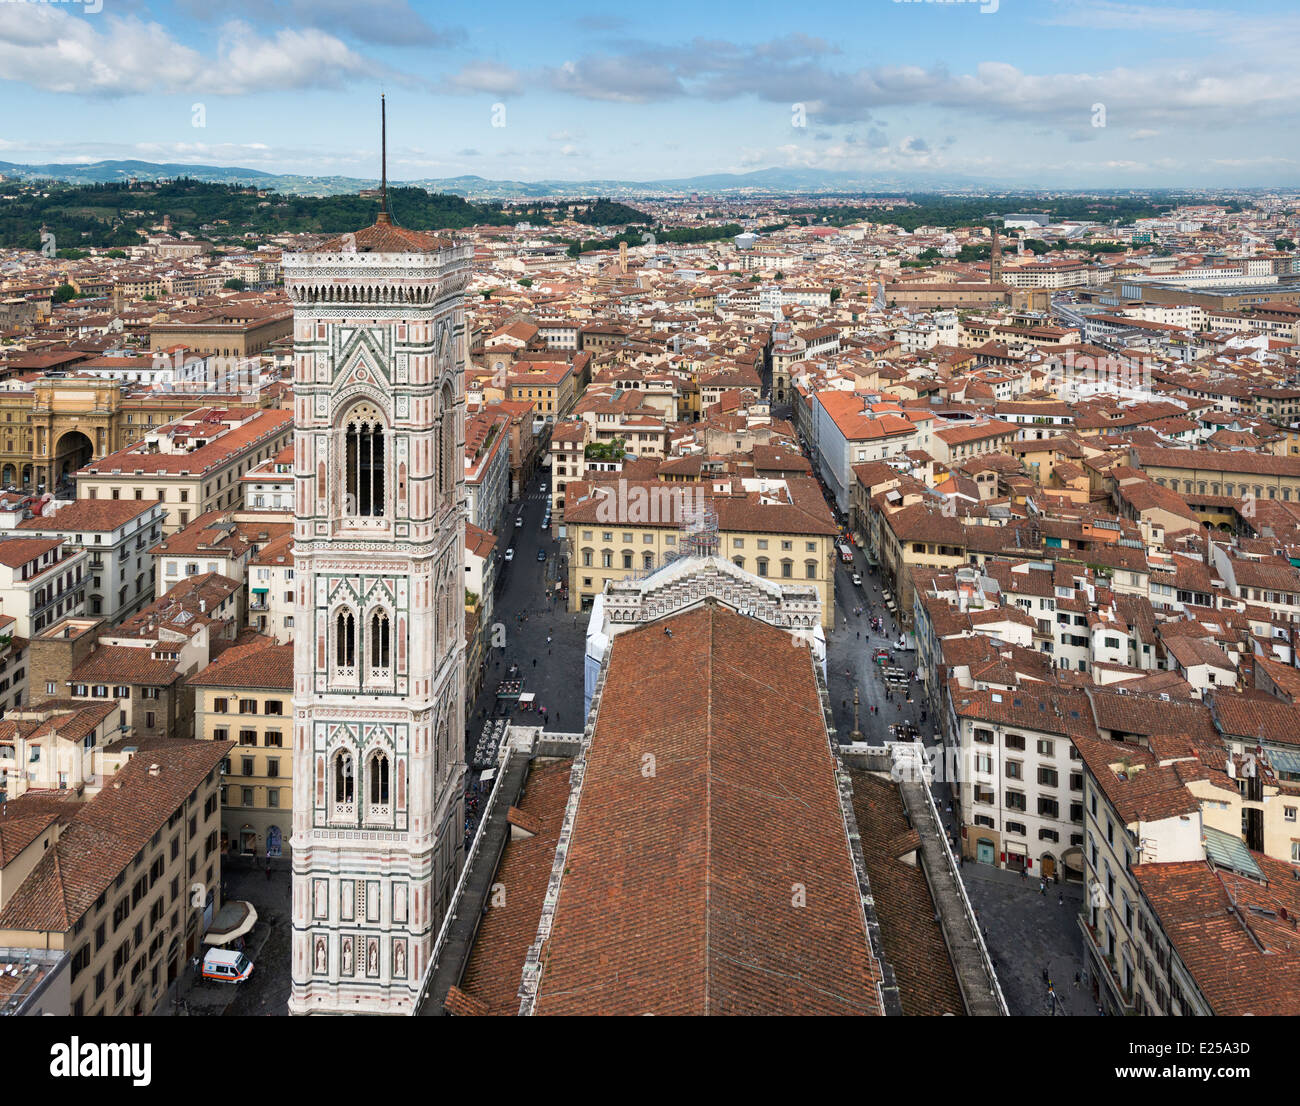 Le Campanile de Giotto et Florence depuis le dôme du Duomo Banque D'Images